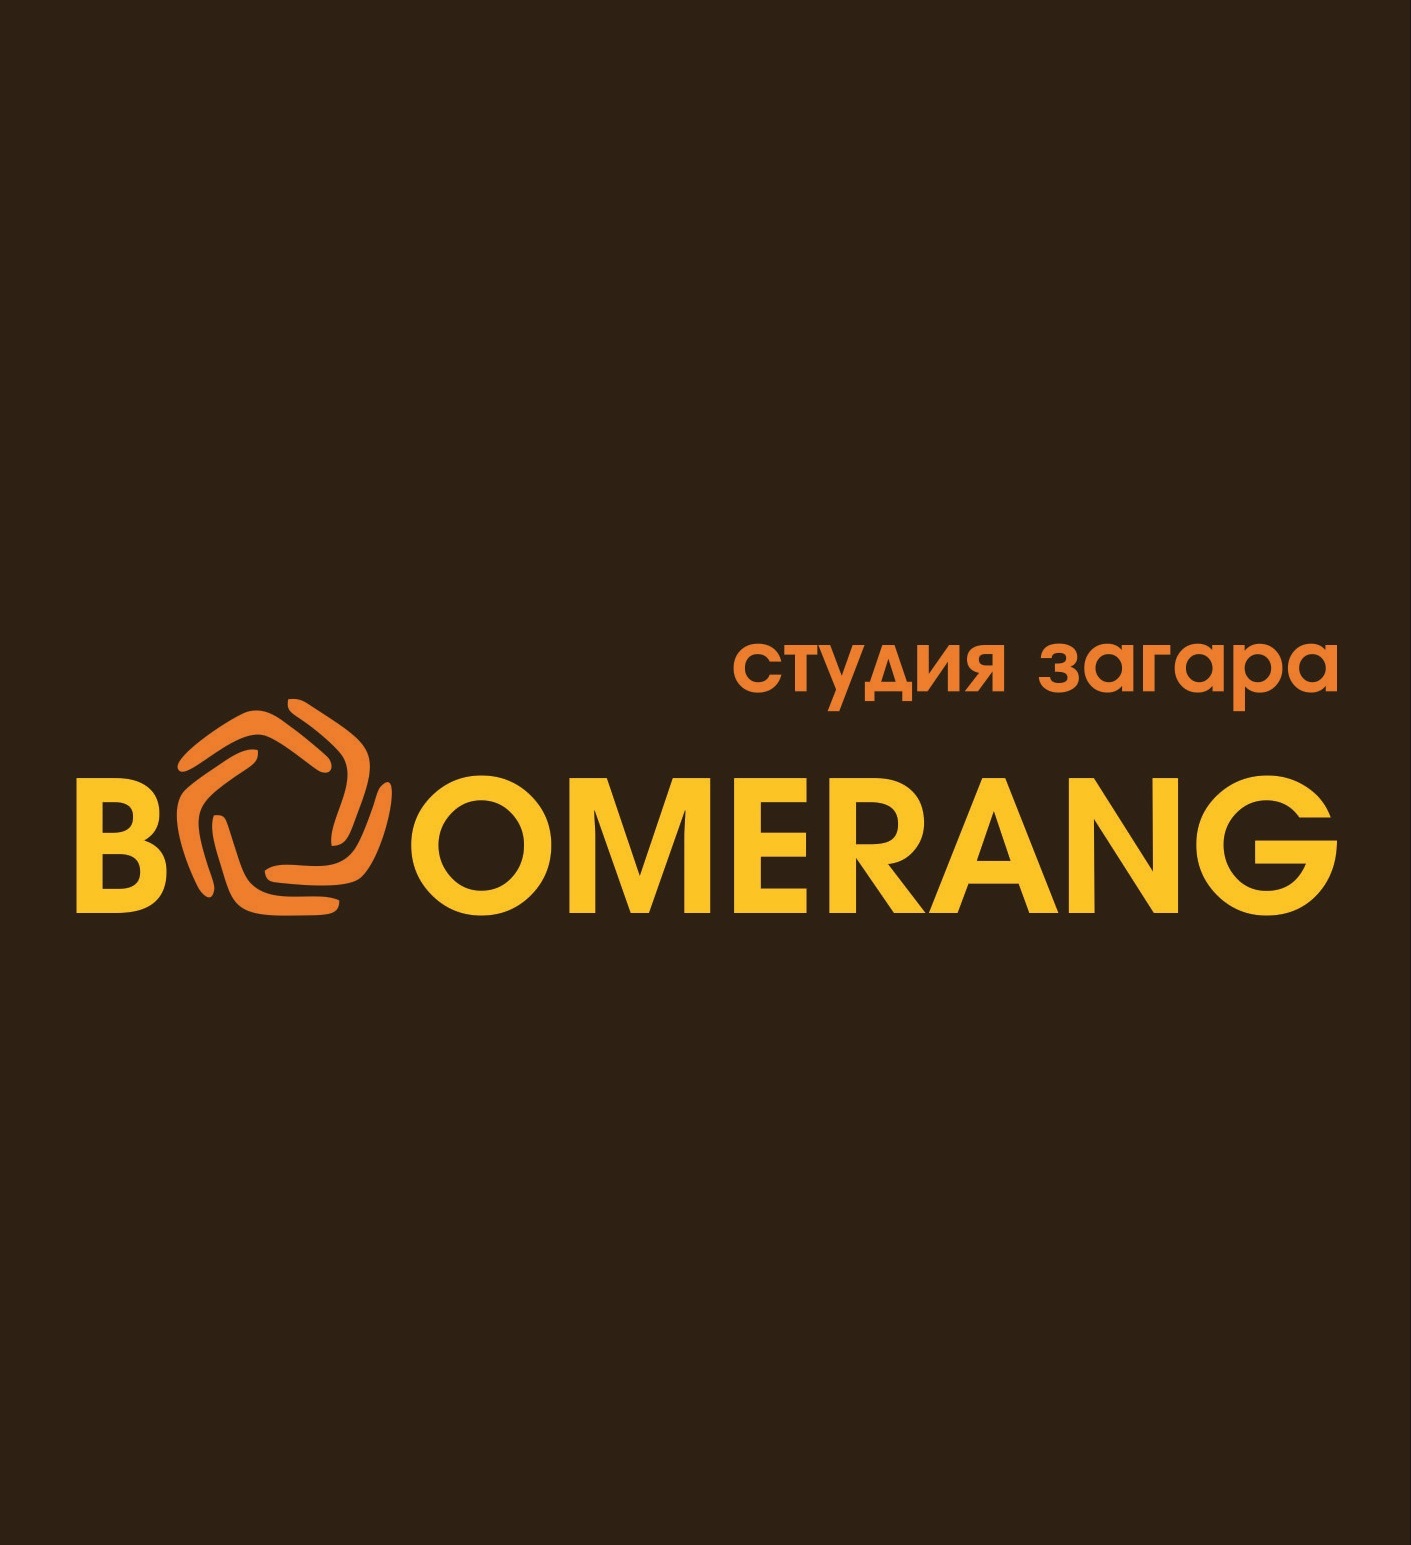 Минута загара всего за 6 рублей! В студии загара "Boomerang" снижение цен на абонементы.